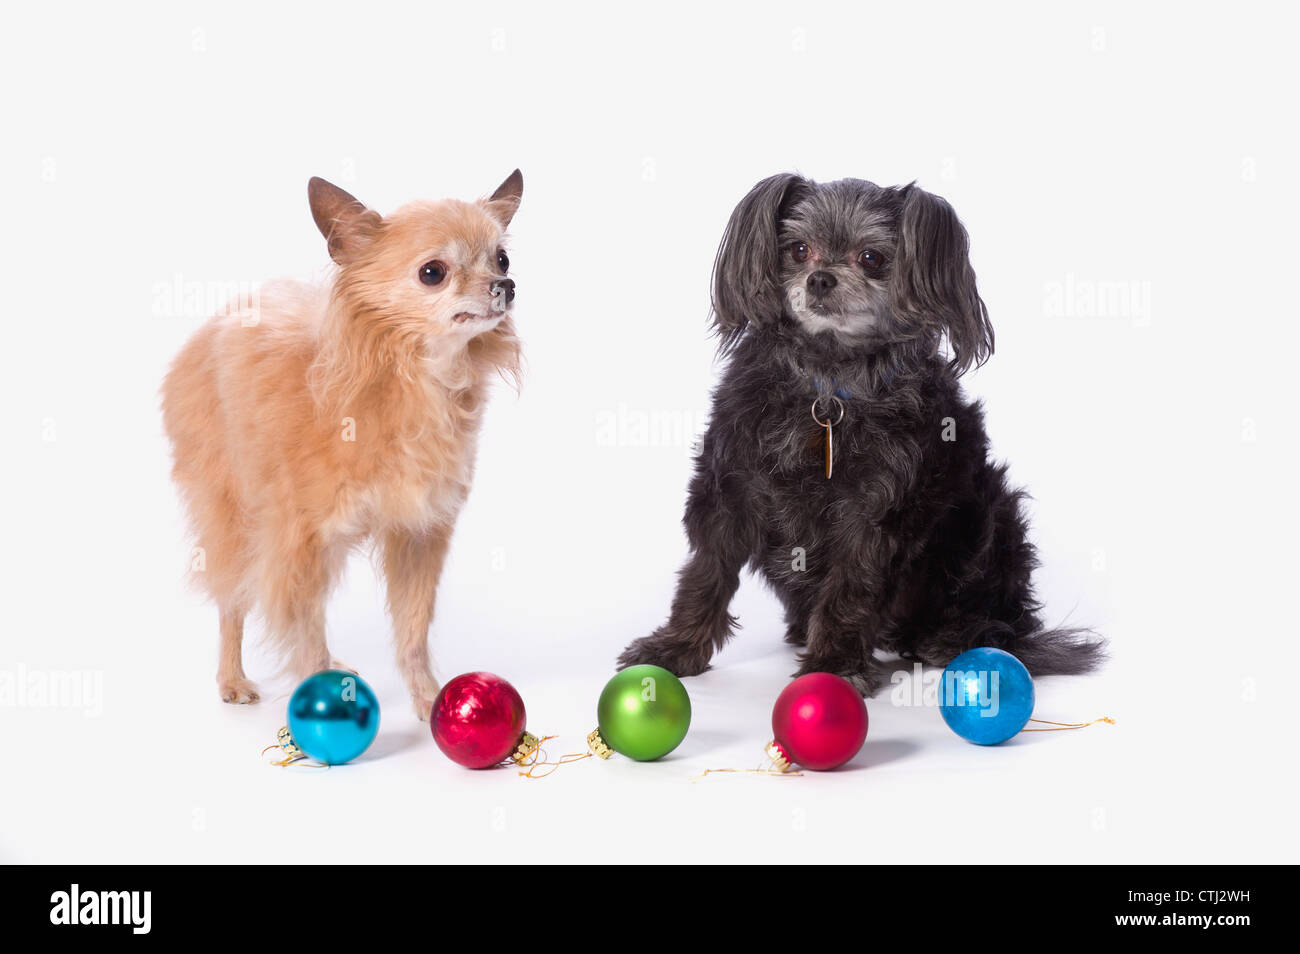 Sfondi Natalizi Con Animali.Cani Di Natale Immagini E Fotos Stock Alamy